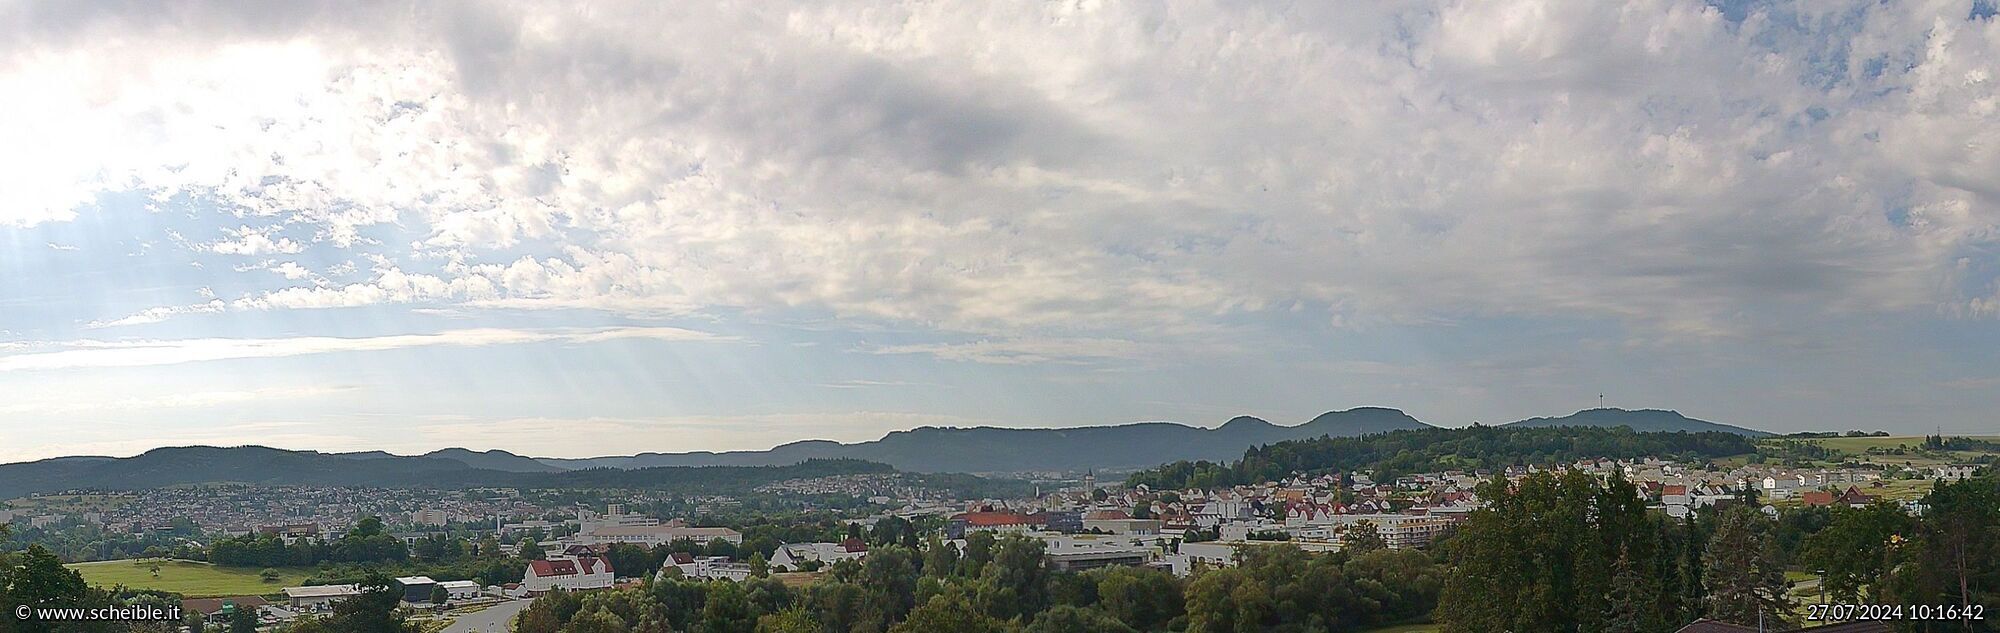 Webcam Stadt Balingen - Blick auf die Innenstadt und den Kirchturm